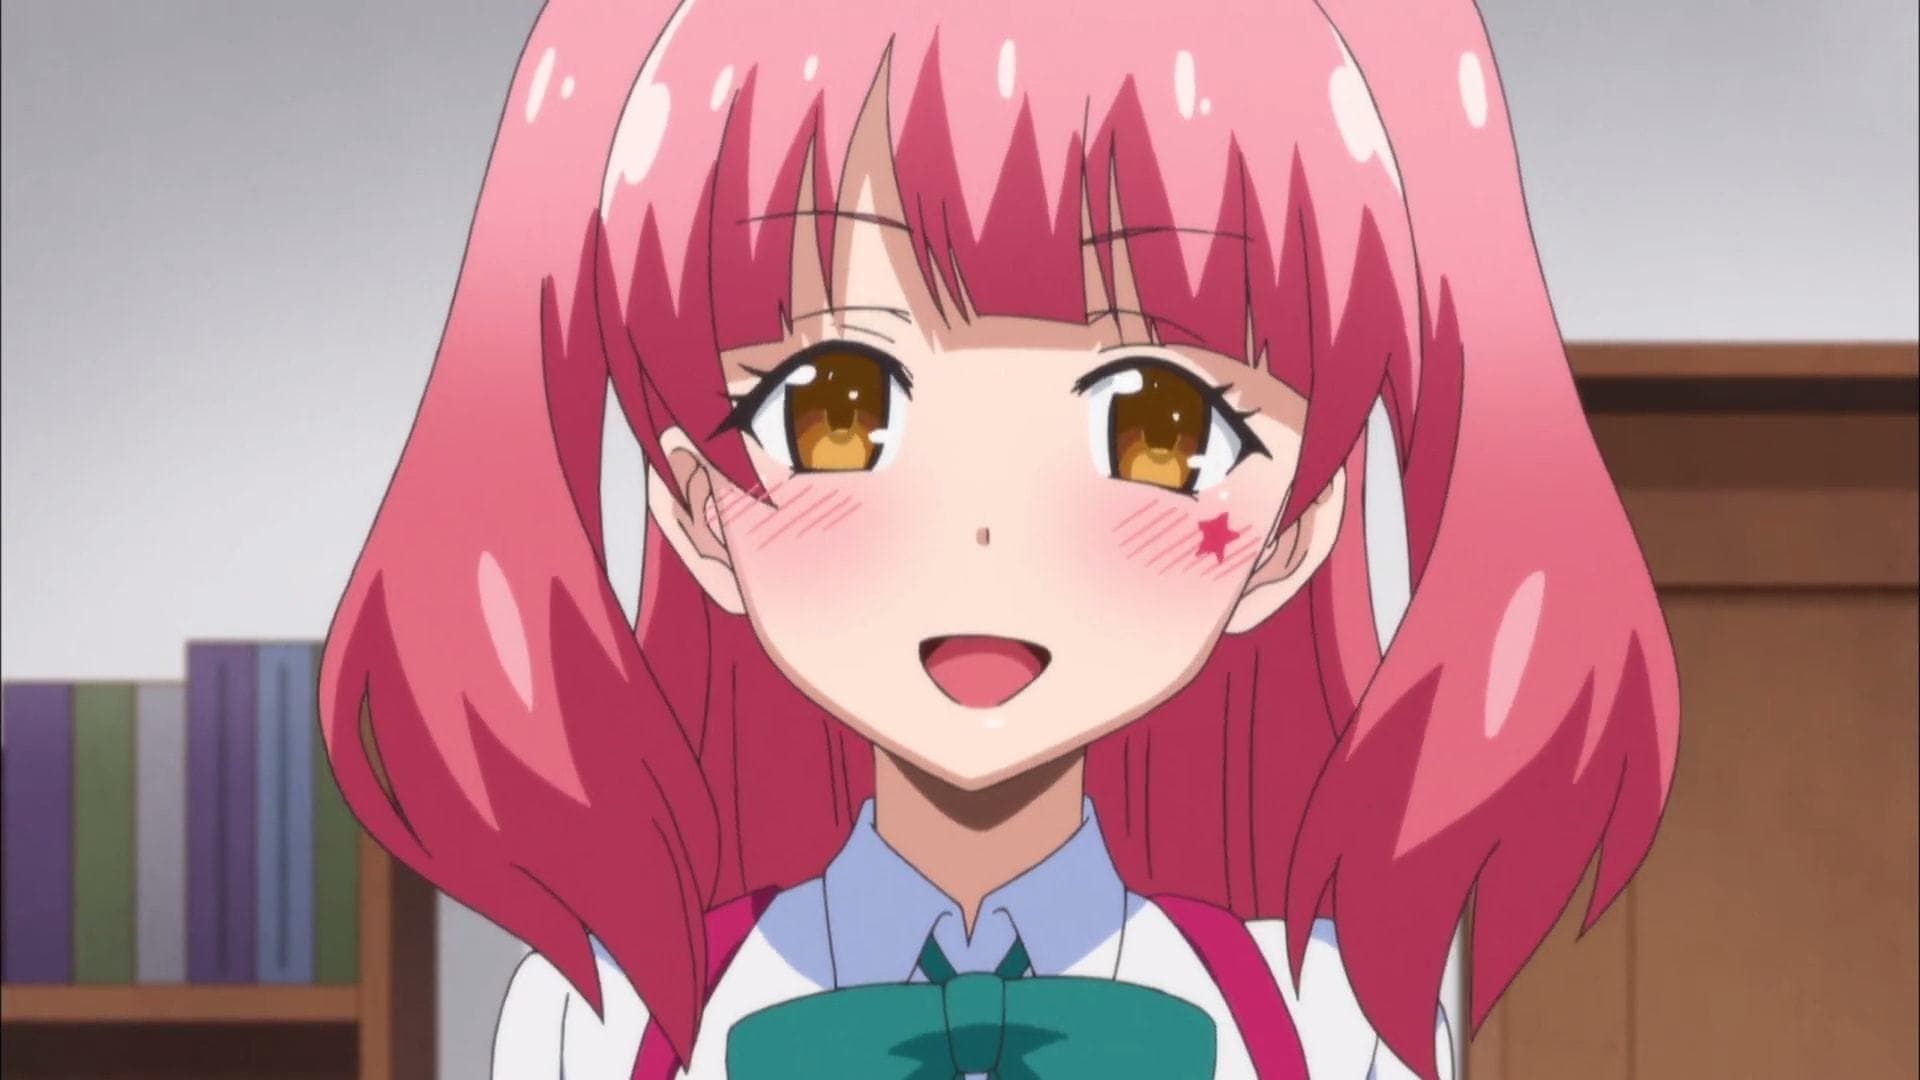 Assistir My First Girlfriend is a Gal Online Gratis (Anime HD)